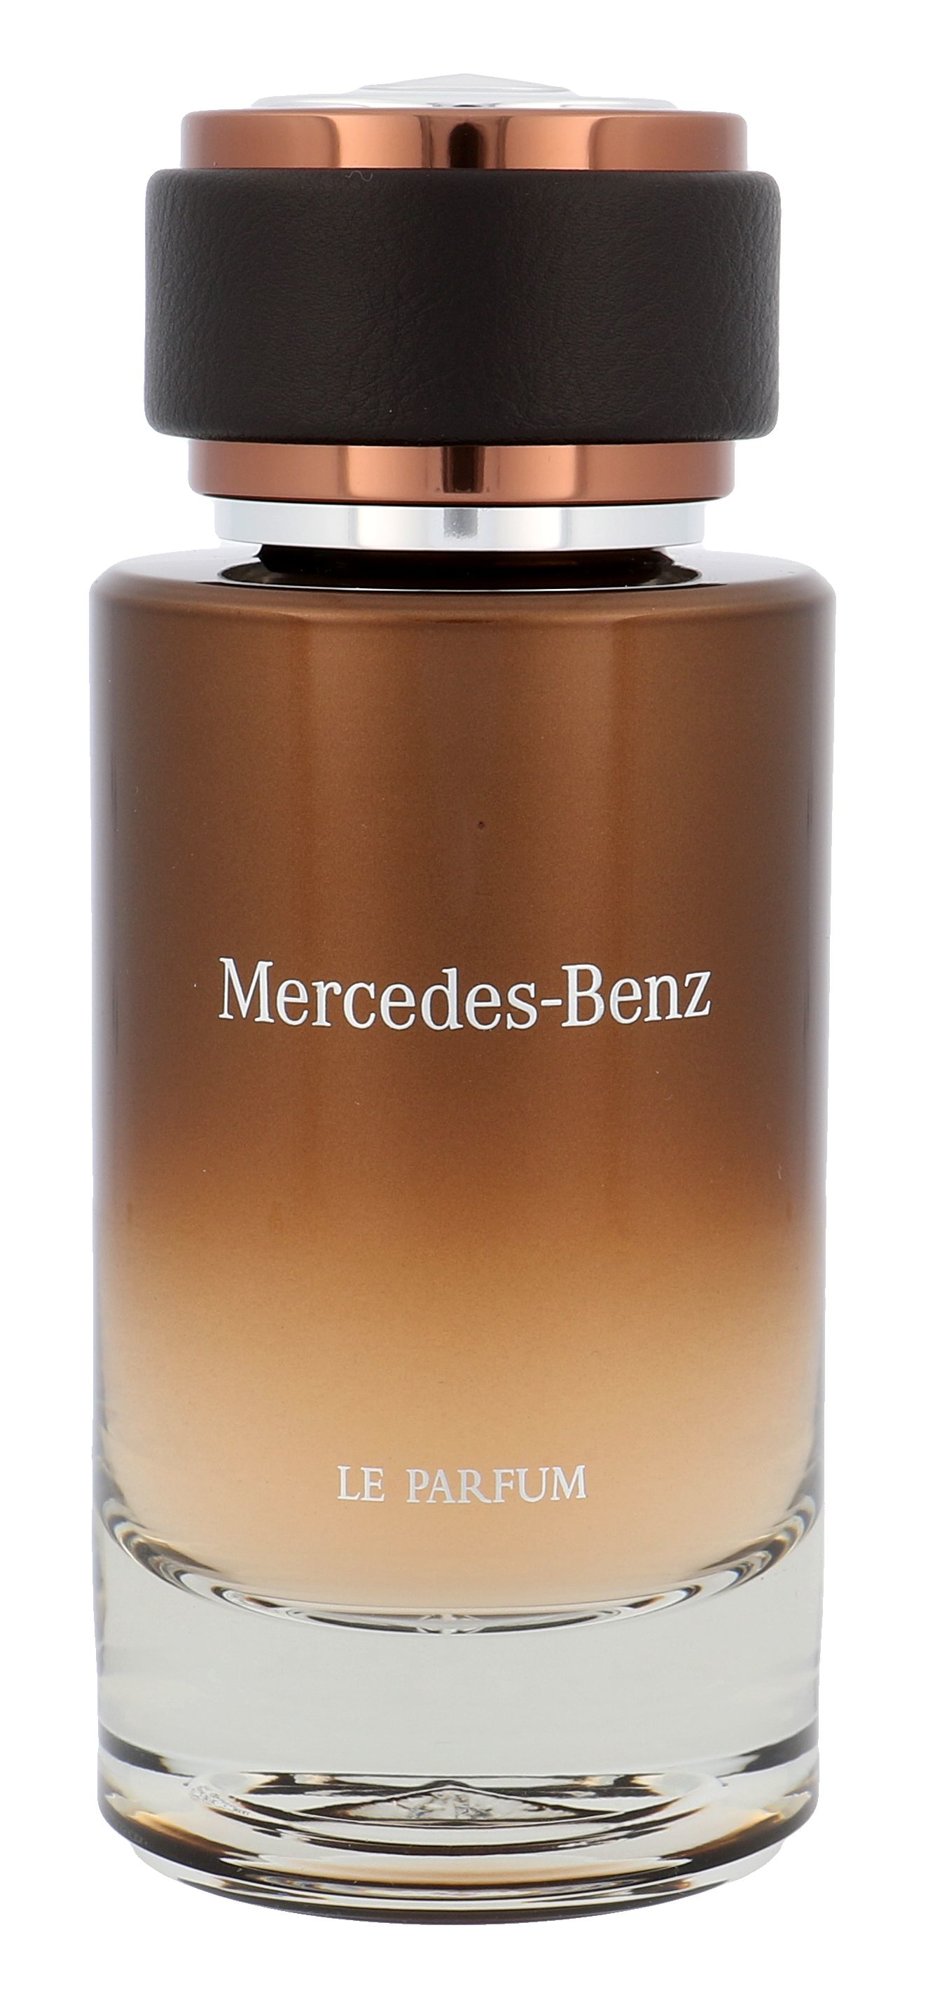 Mercedes Benz Le Parfum For Men - Eau De Parfum - 120ml